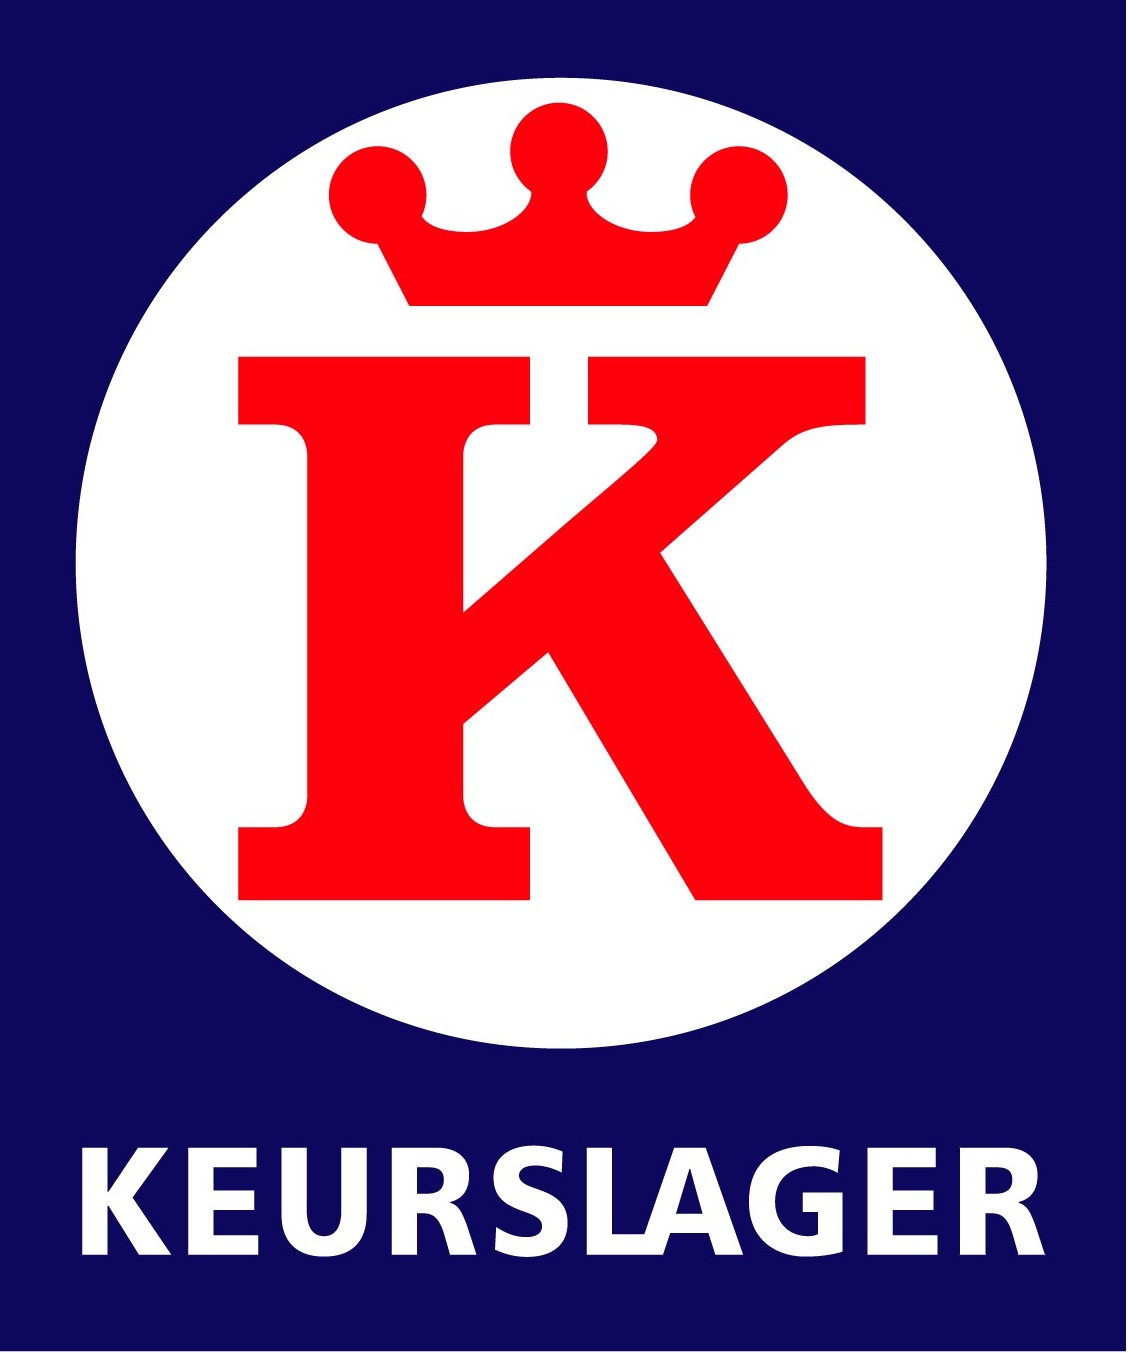 Webshop Kenkhuis keurslager logo